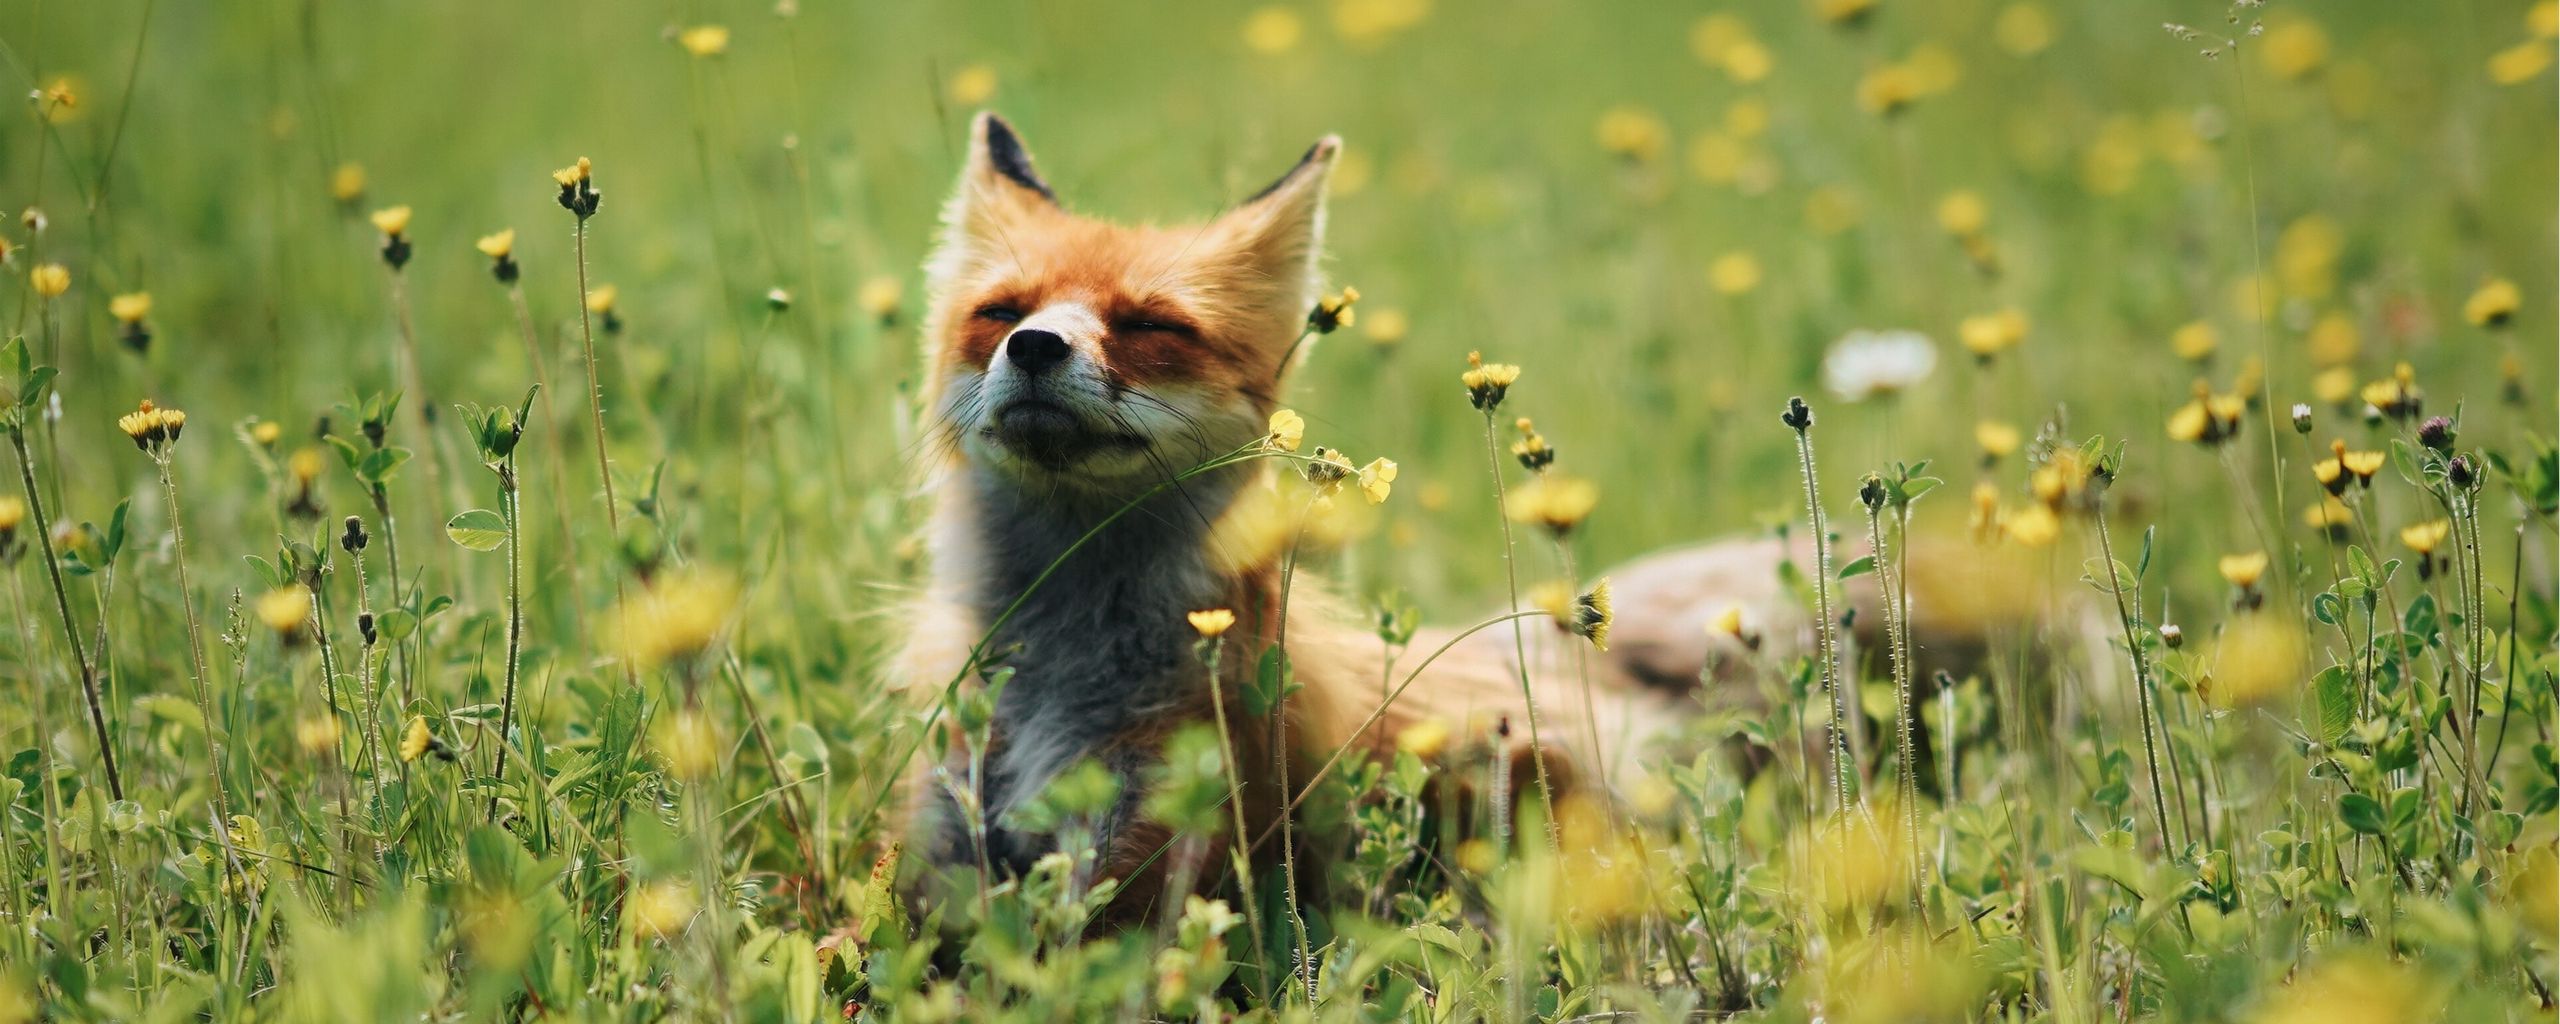 2560x1024 Wallpaper fox, cute, flowers, grass, animal